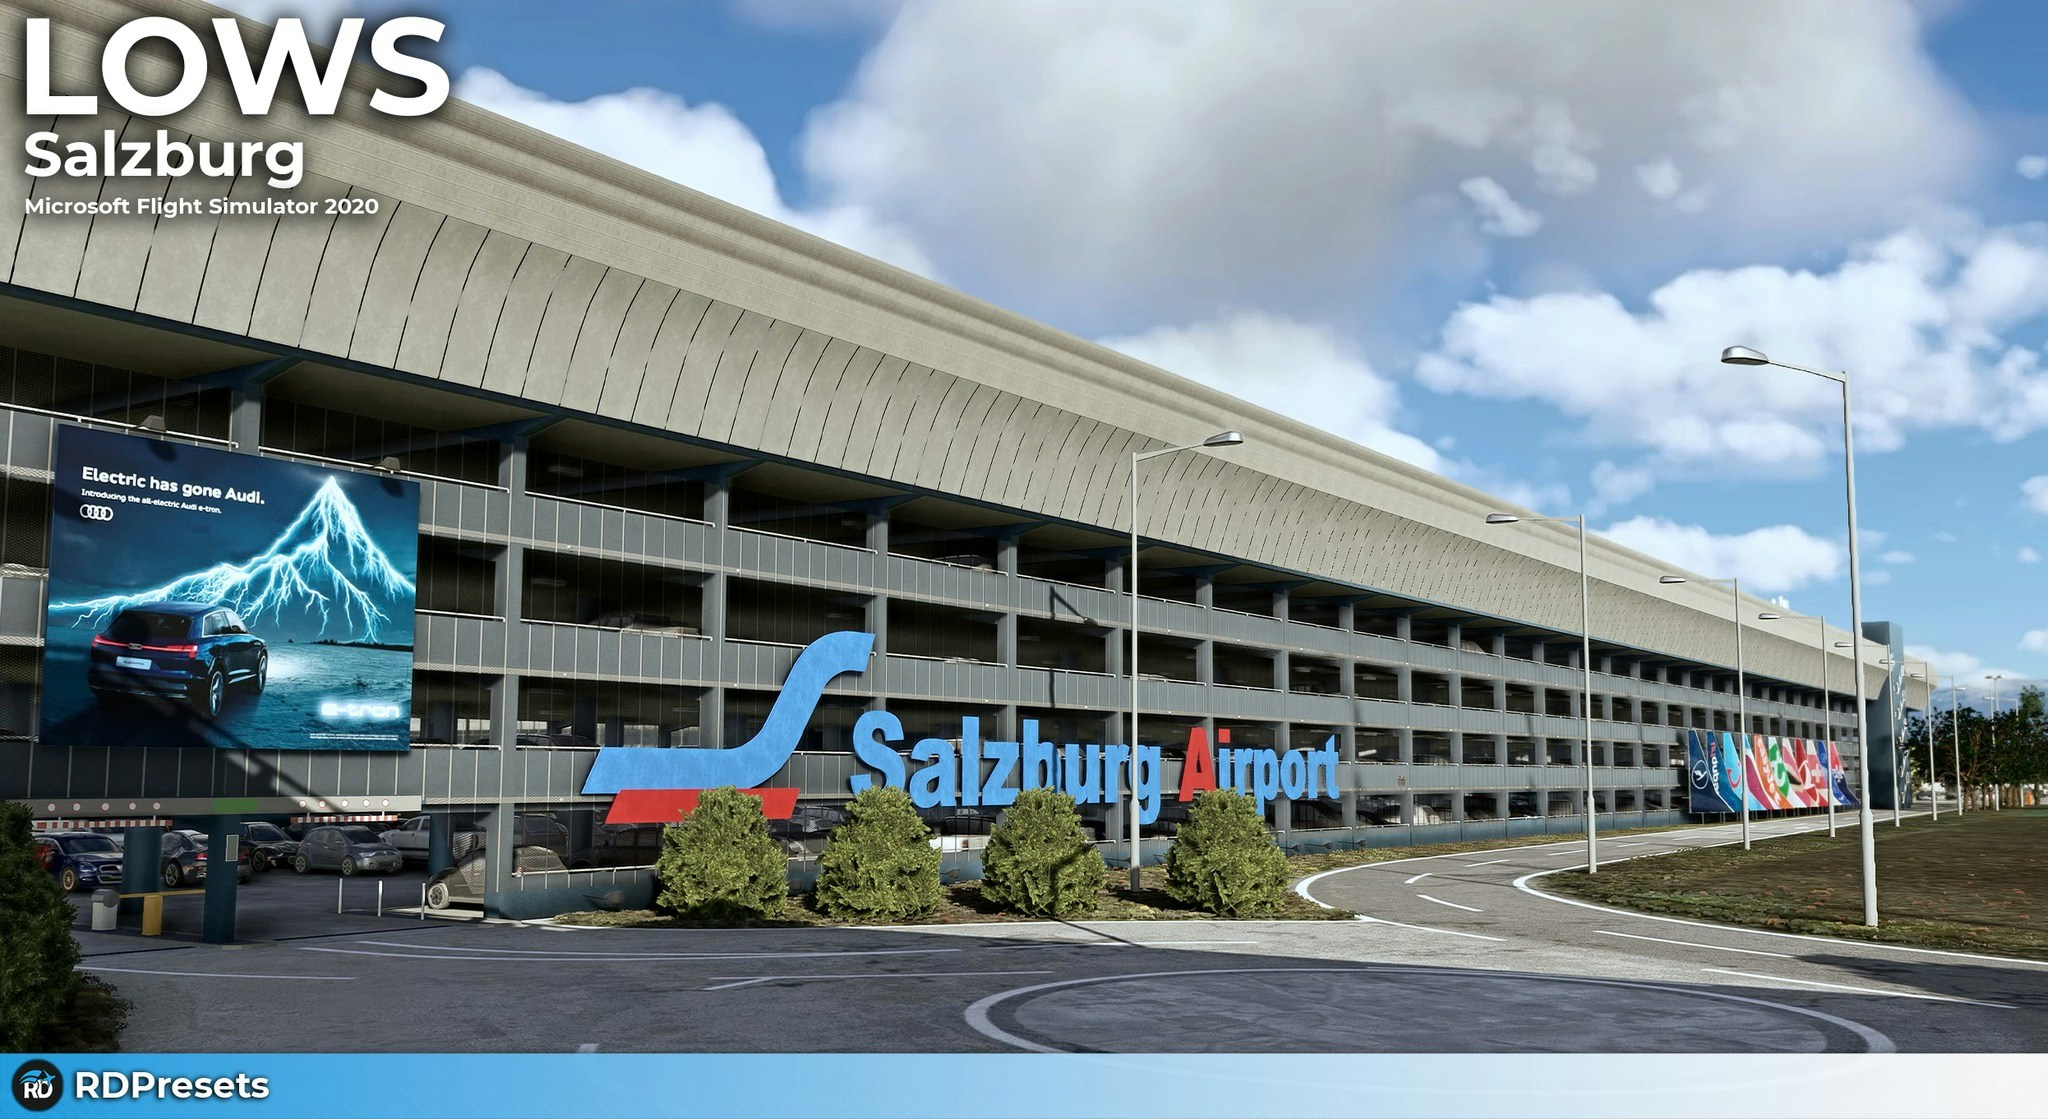 RDPresets annonce l'aéroport de Salzbourg, disponible samedi